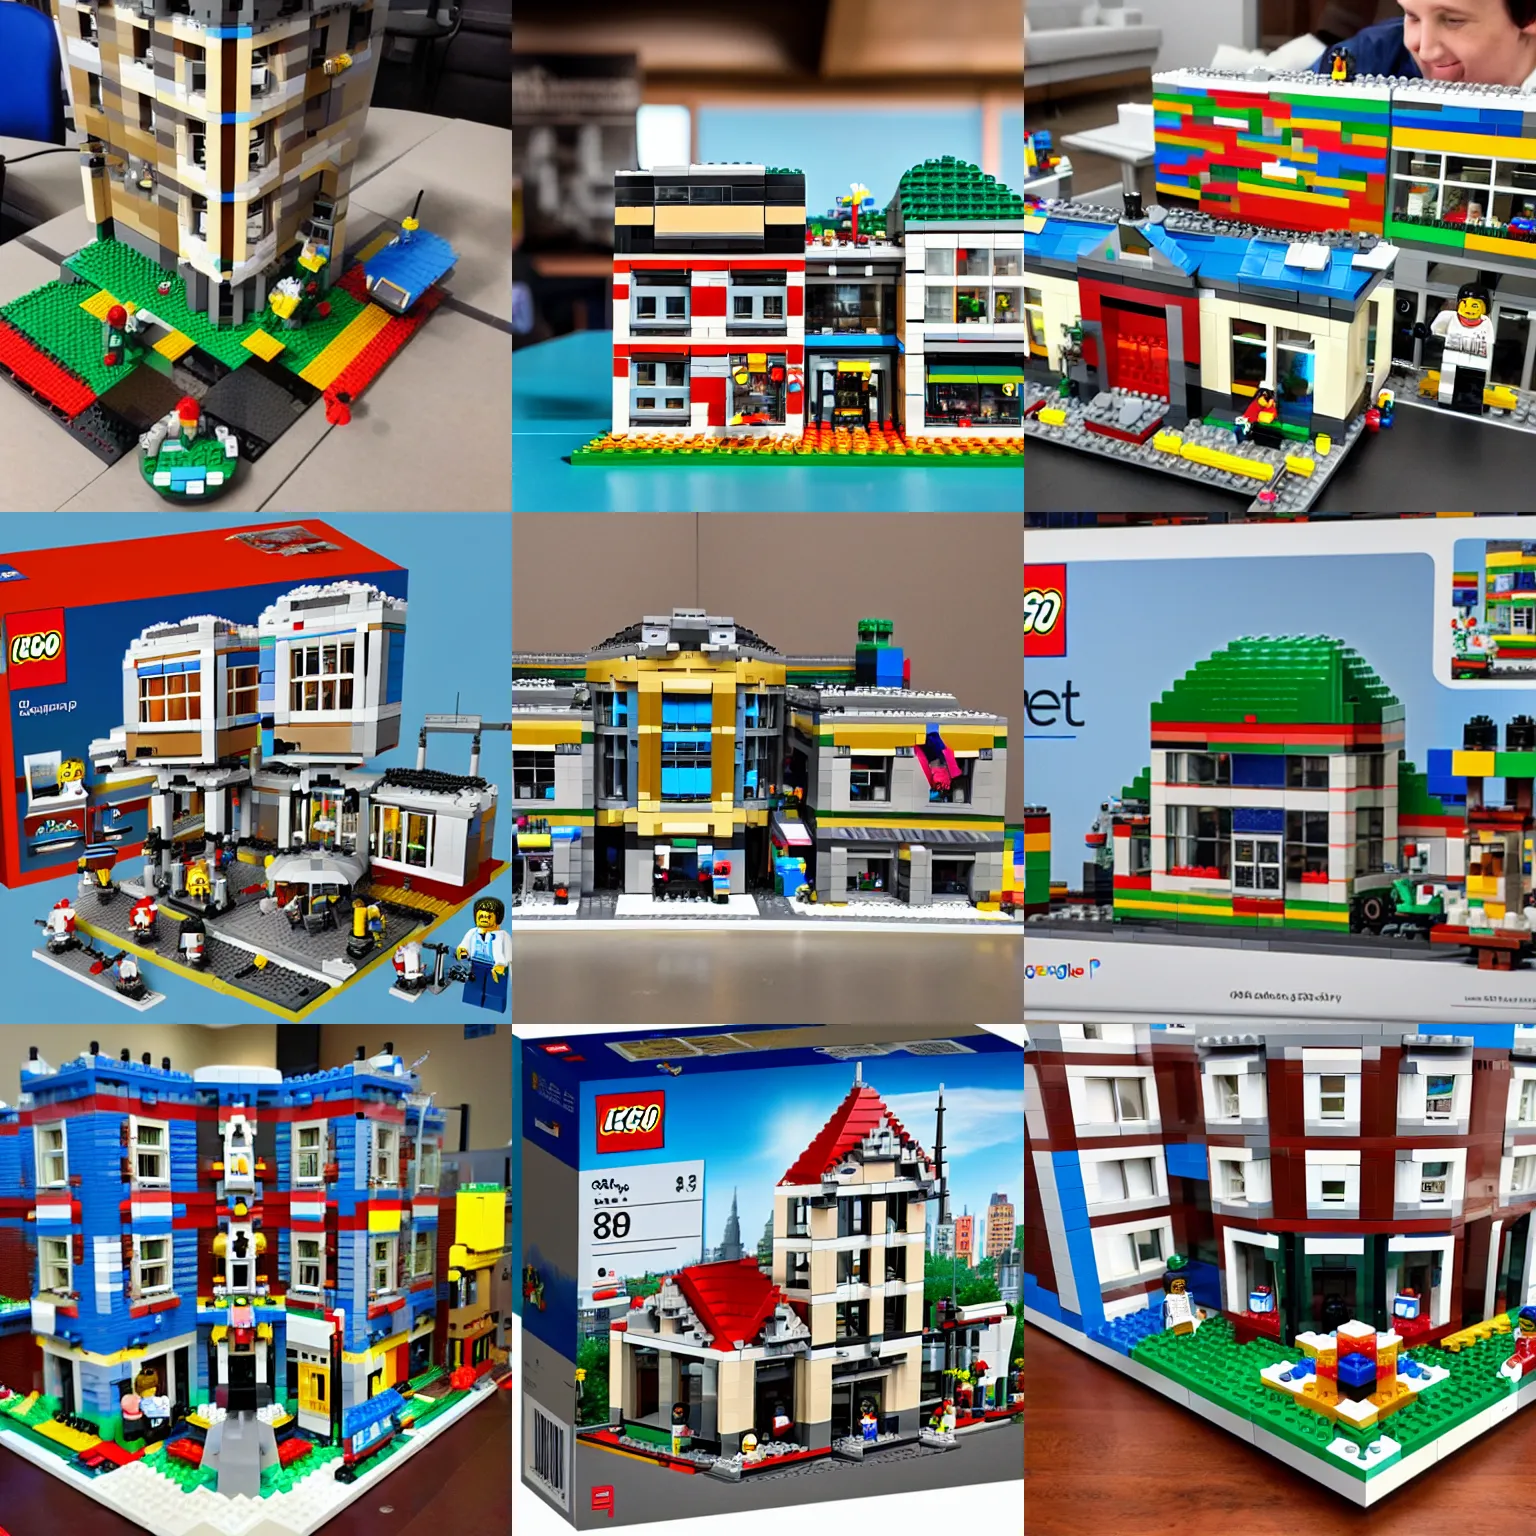 Prompt: google campus lego set